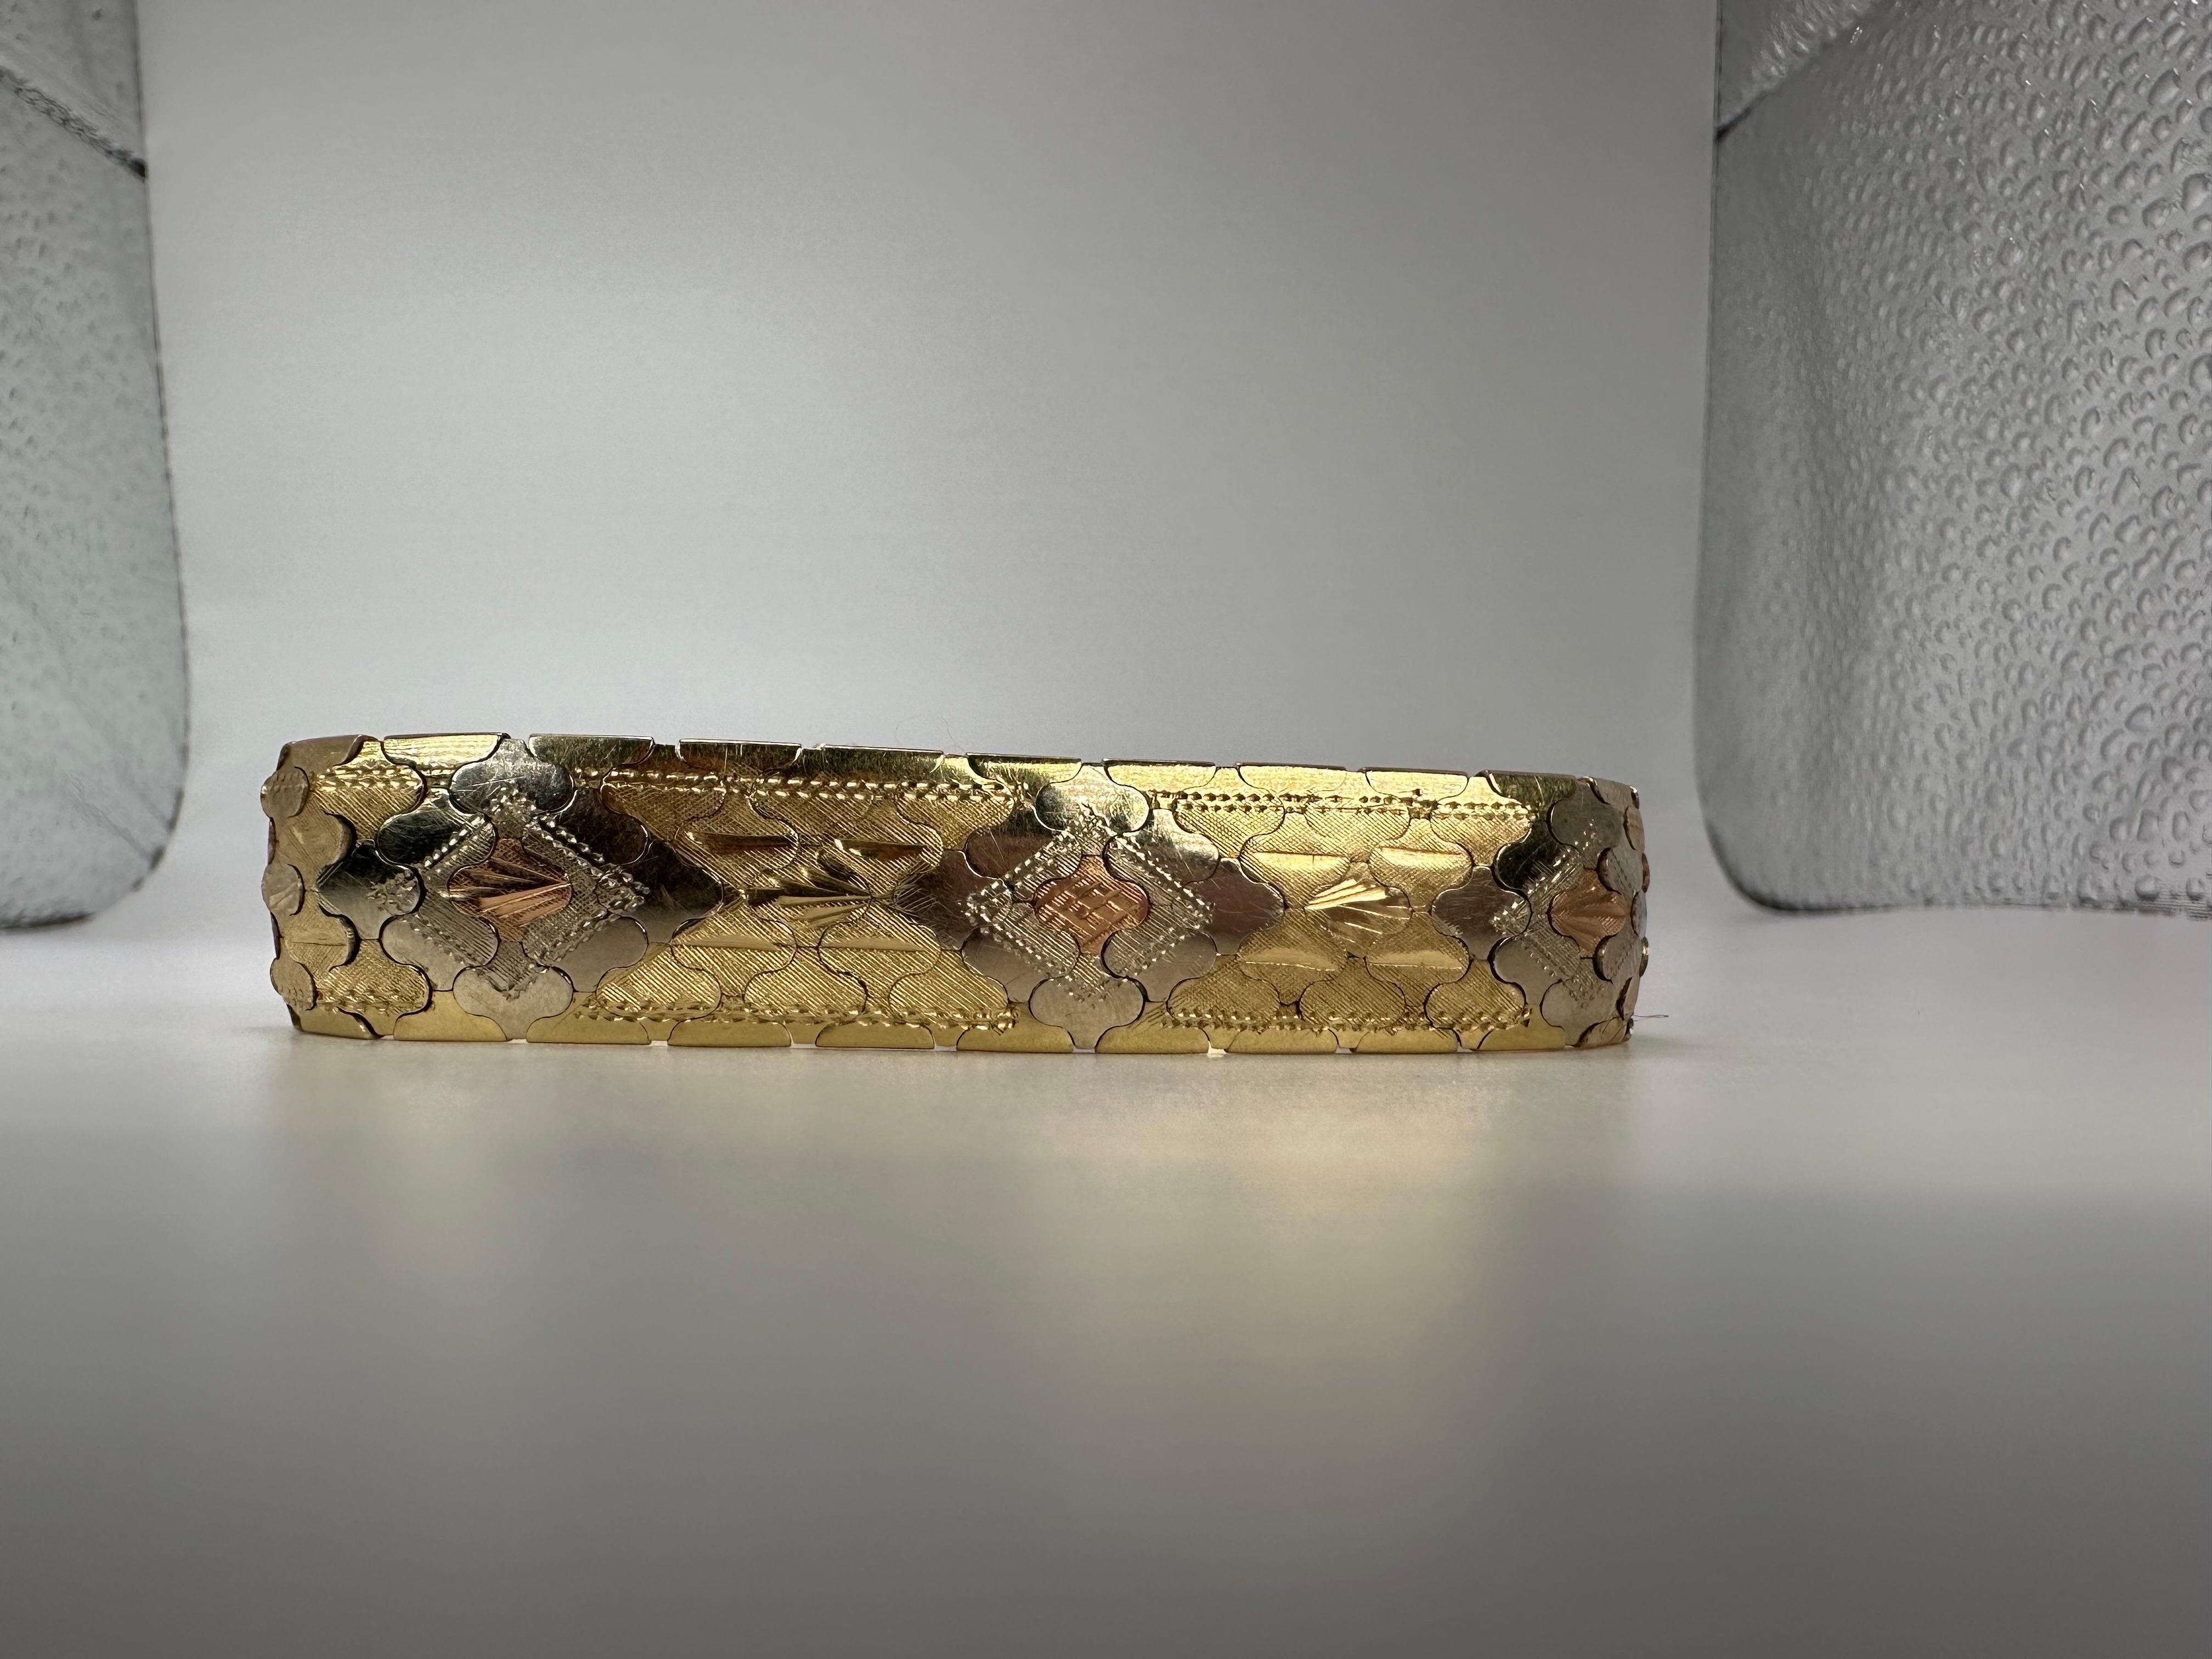 Einzigartiges Goldarmband in 14KT Gold mit einzigartigem Muster und Handwerkskunst! Weit und schön zu jedem Outfit!

GOLD: 18KT Gold
Gramm:41
Größe:7.27